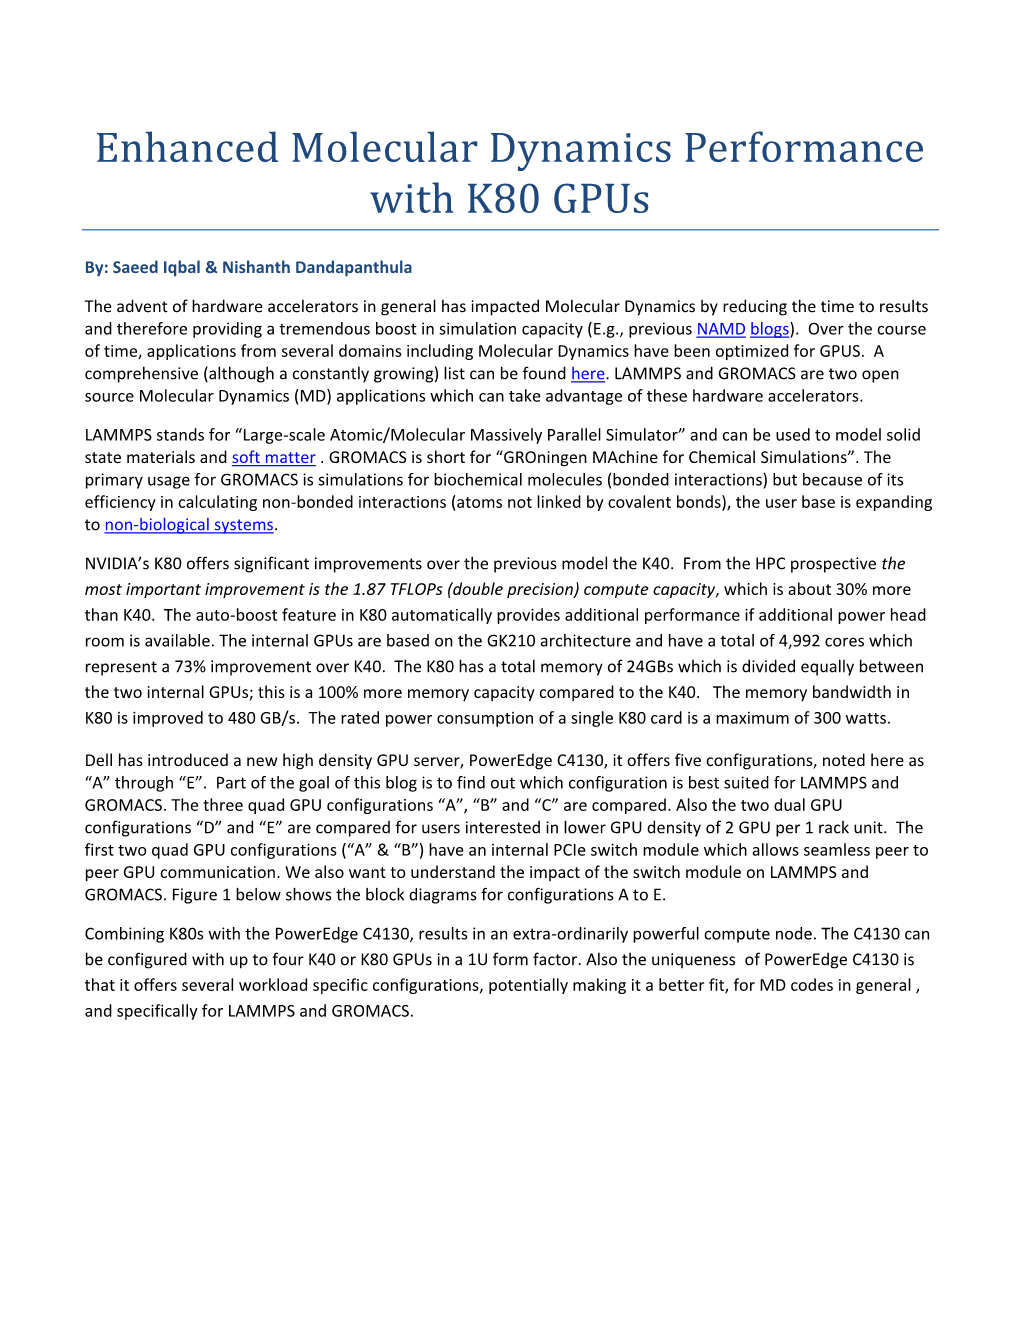 Enhanced Molecular Dynamics Performance with K80 Gpus